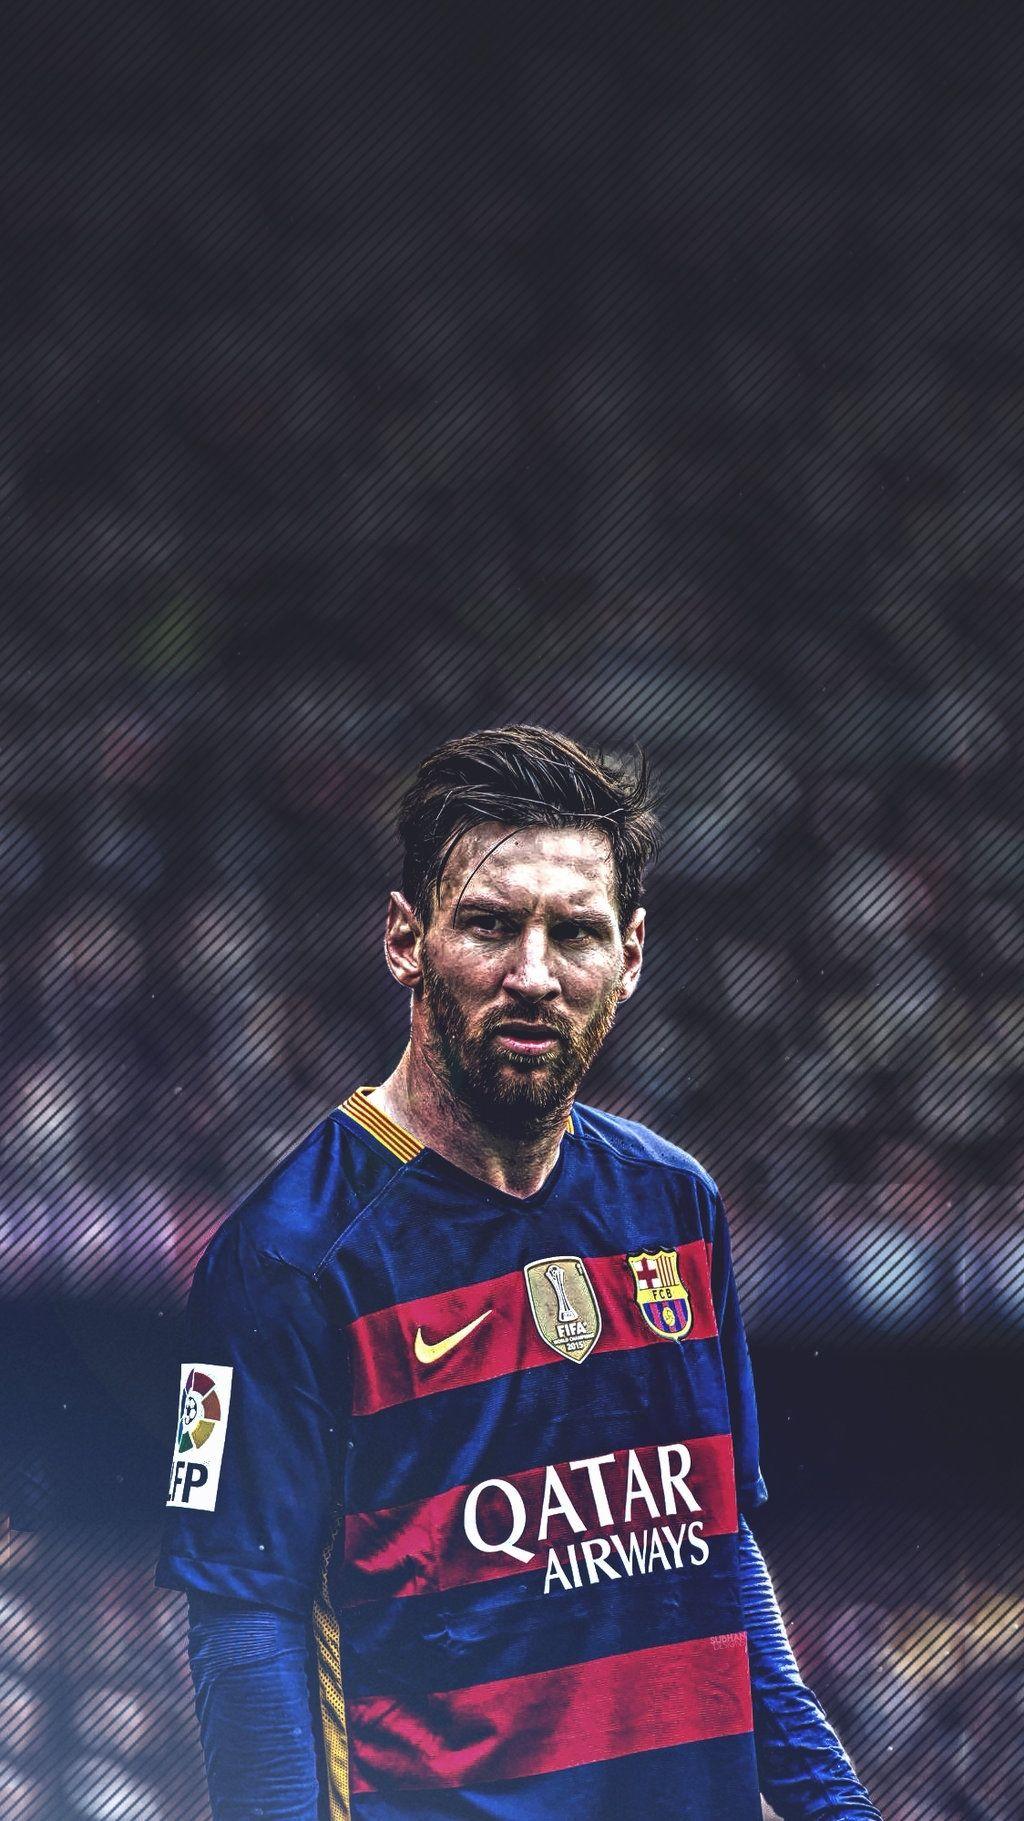 Bạn đang tìm kiếm bộ sưu tập hình nền điện thoại Messi đẹp nhất? Hãy tận hưởng tất cả sự đa dạng, từ tấm hình chụp Messi trong phong cách quảng cáo đến những thước phim xuất sắc về anh. Hãy khám phá bộ sưu tập hình nền Messi đẹp nhất ngay bây giờ và thật sự khó lòng chối từ!